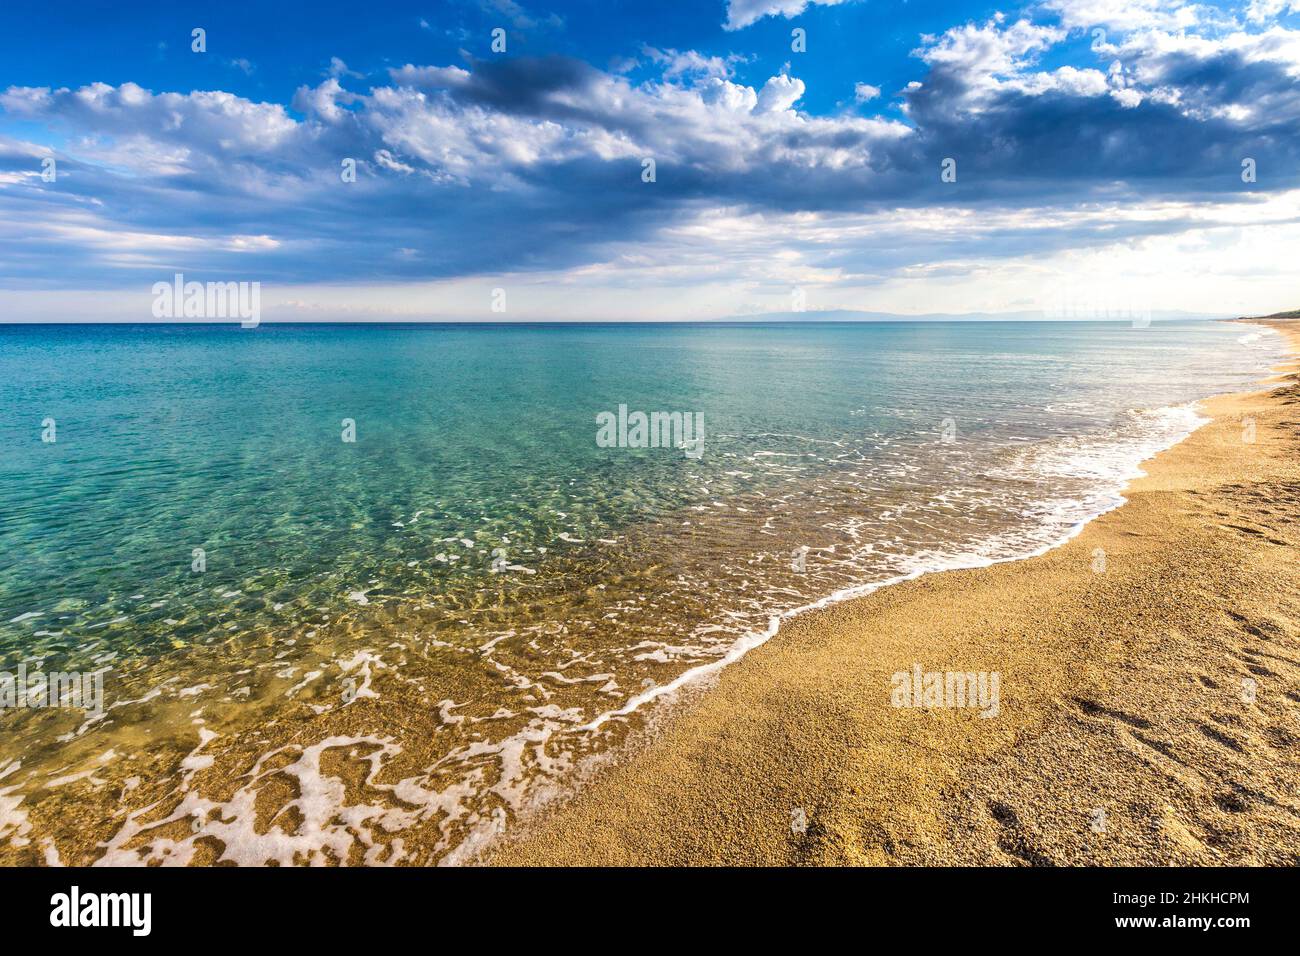 Sandstrand am Ufer des ruhigen türkisfarbenen Meeres und Wolken am blauen Himmel in Italien, Europa. Stockfoto